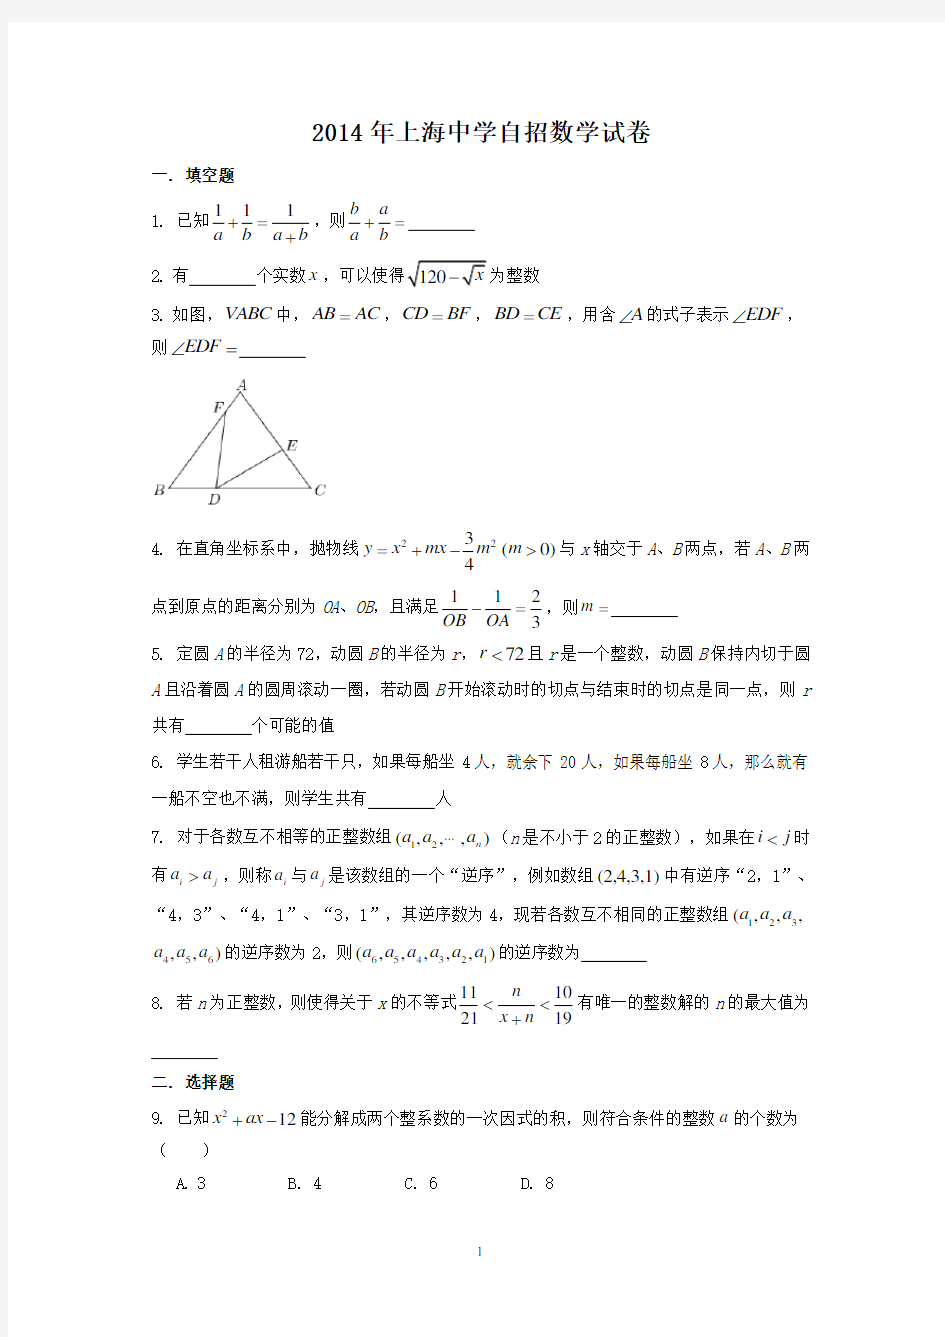 2014年上海中学自招数学试卷及详细答案